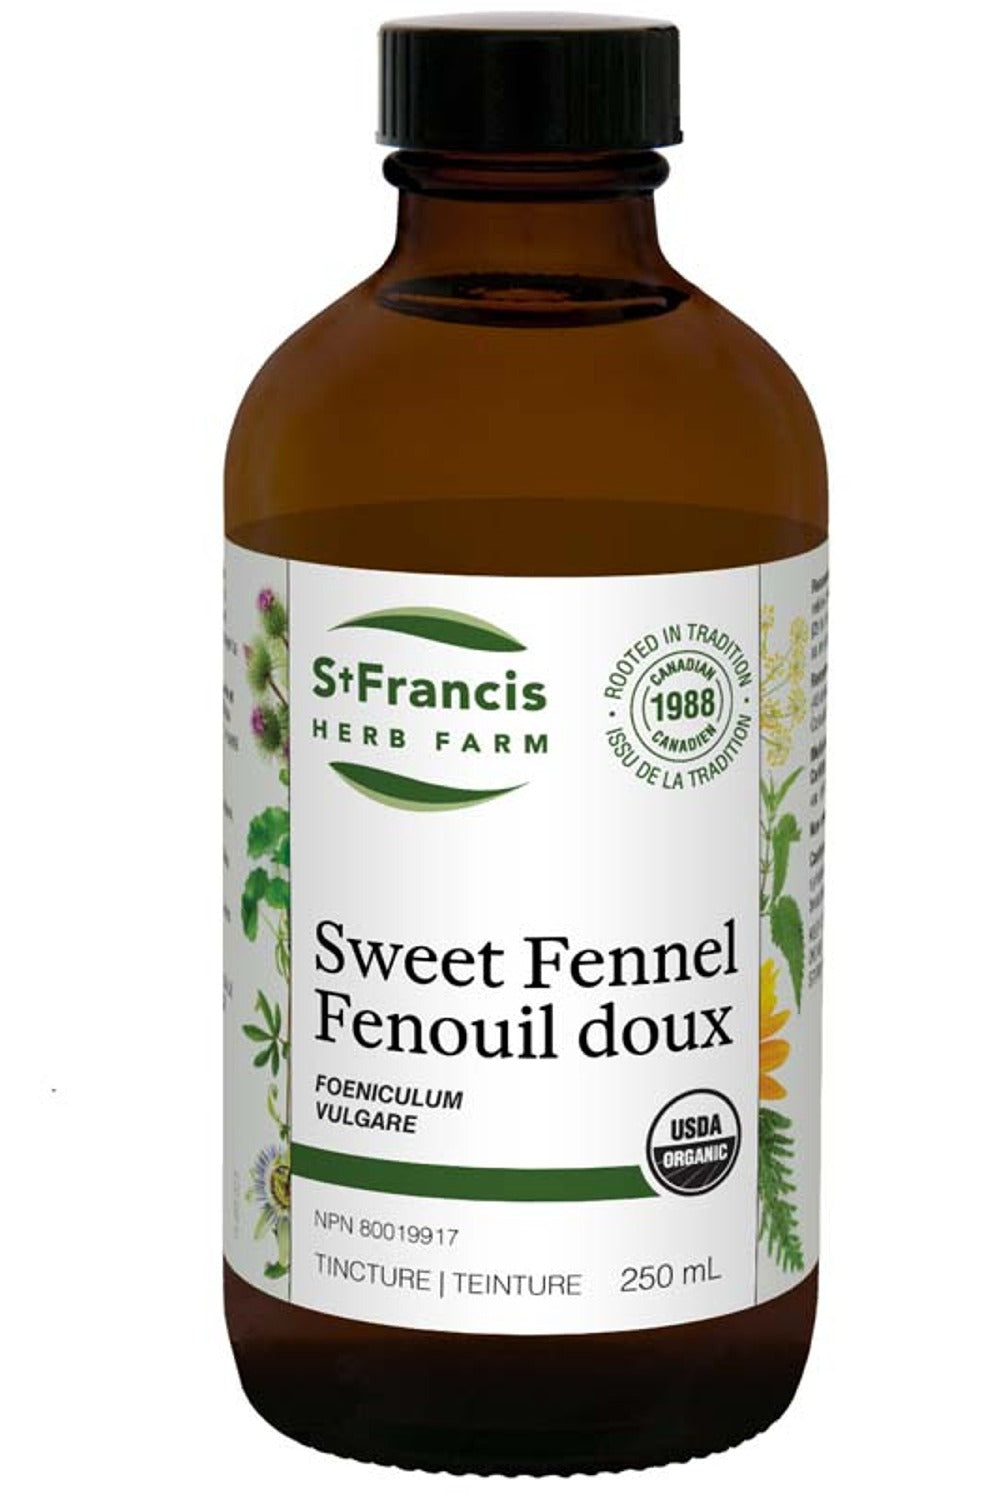 ST FRANCIS HERB FARM Fennel (250 ml)